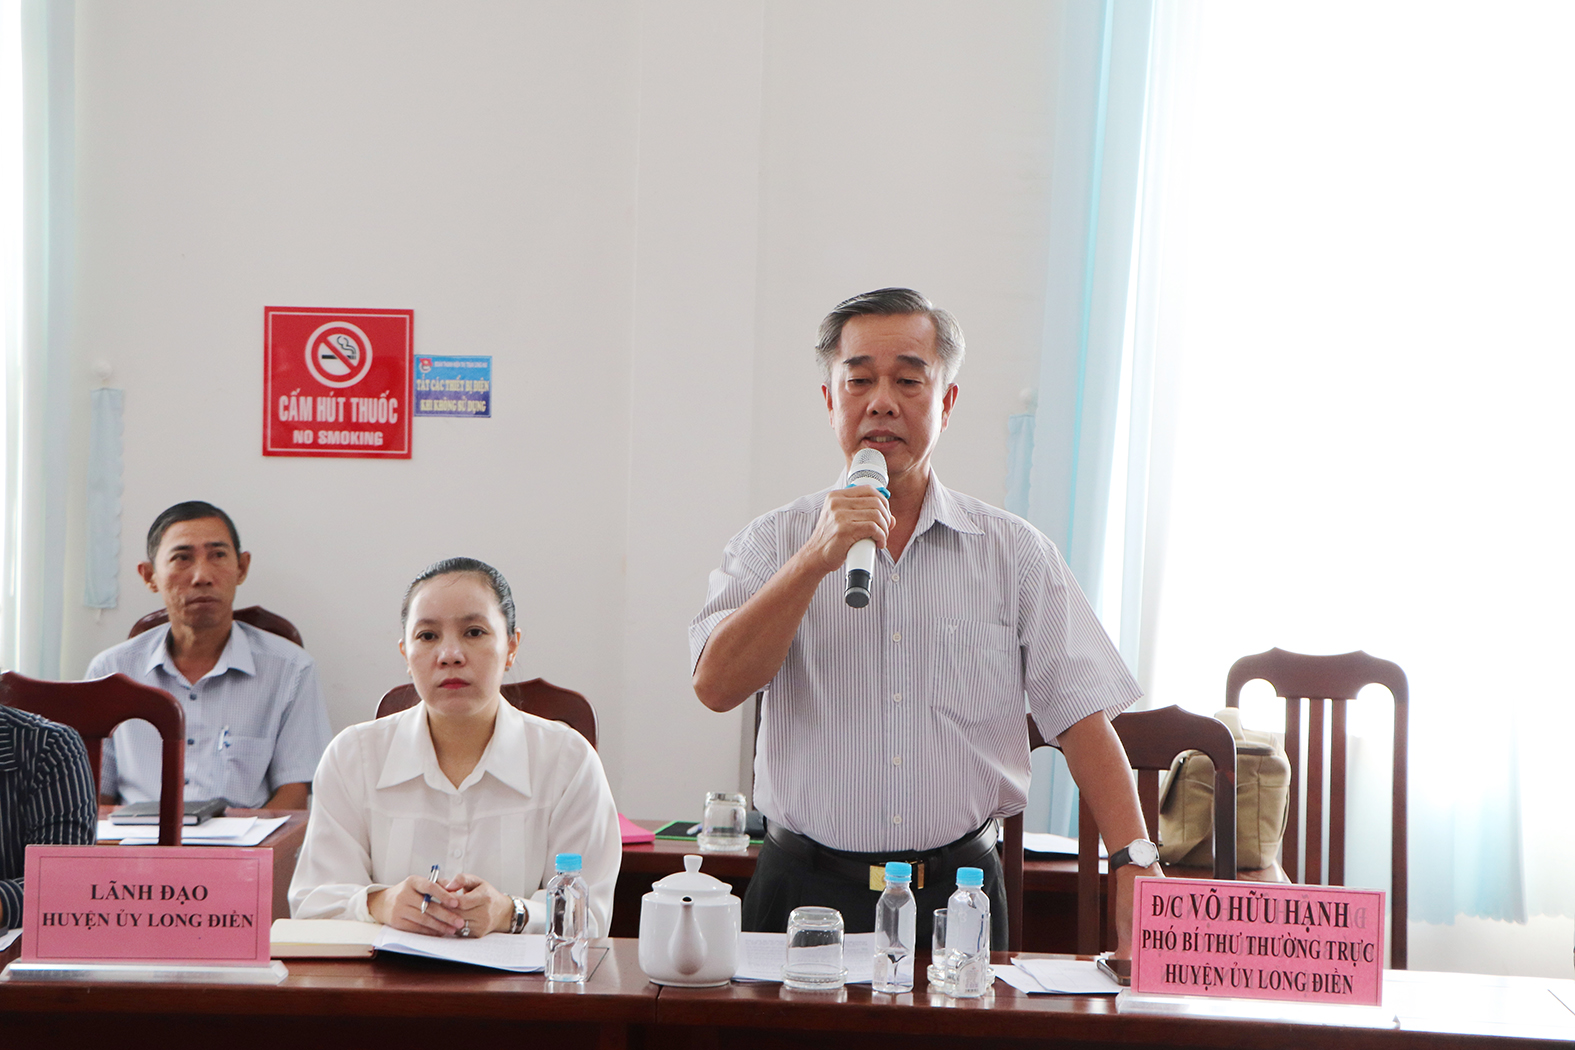 Ông Võ Hữu Hạnh, Phó Bí thư Thường trực Huyện ủy Long Điền trả lời với người dân.